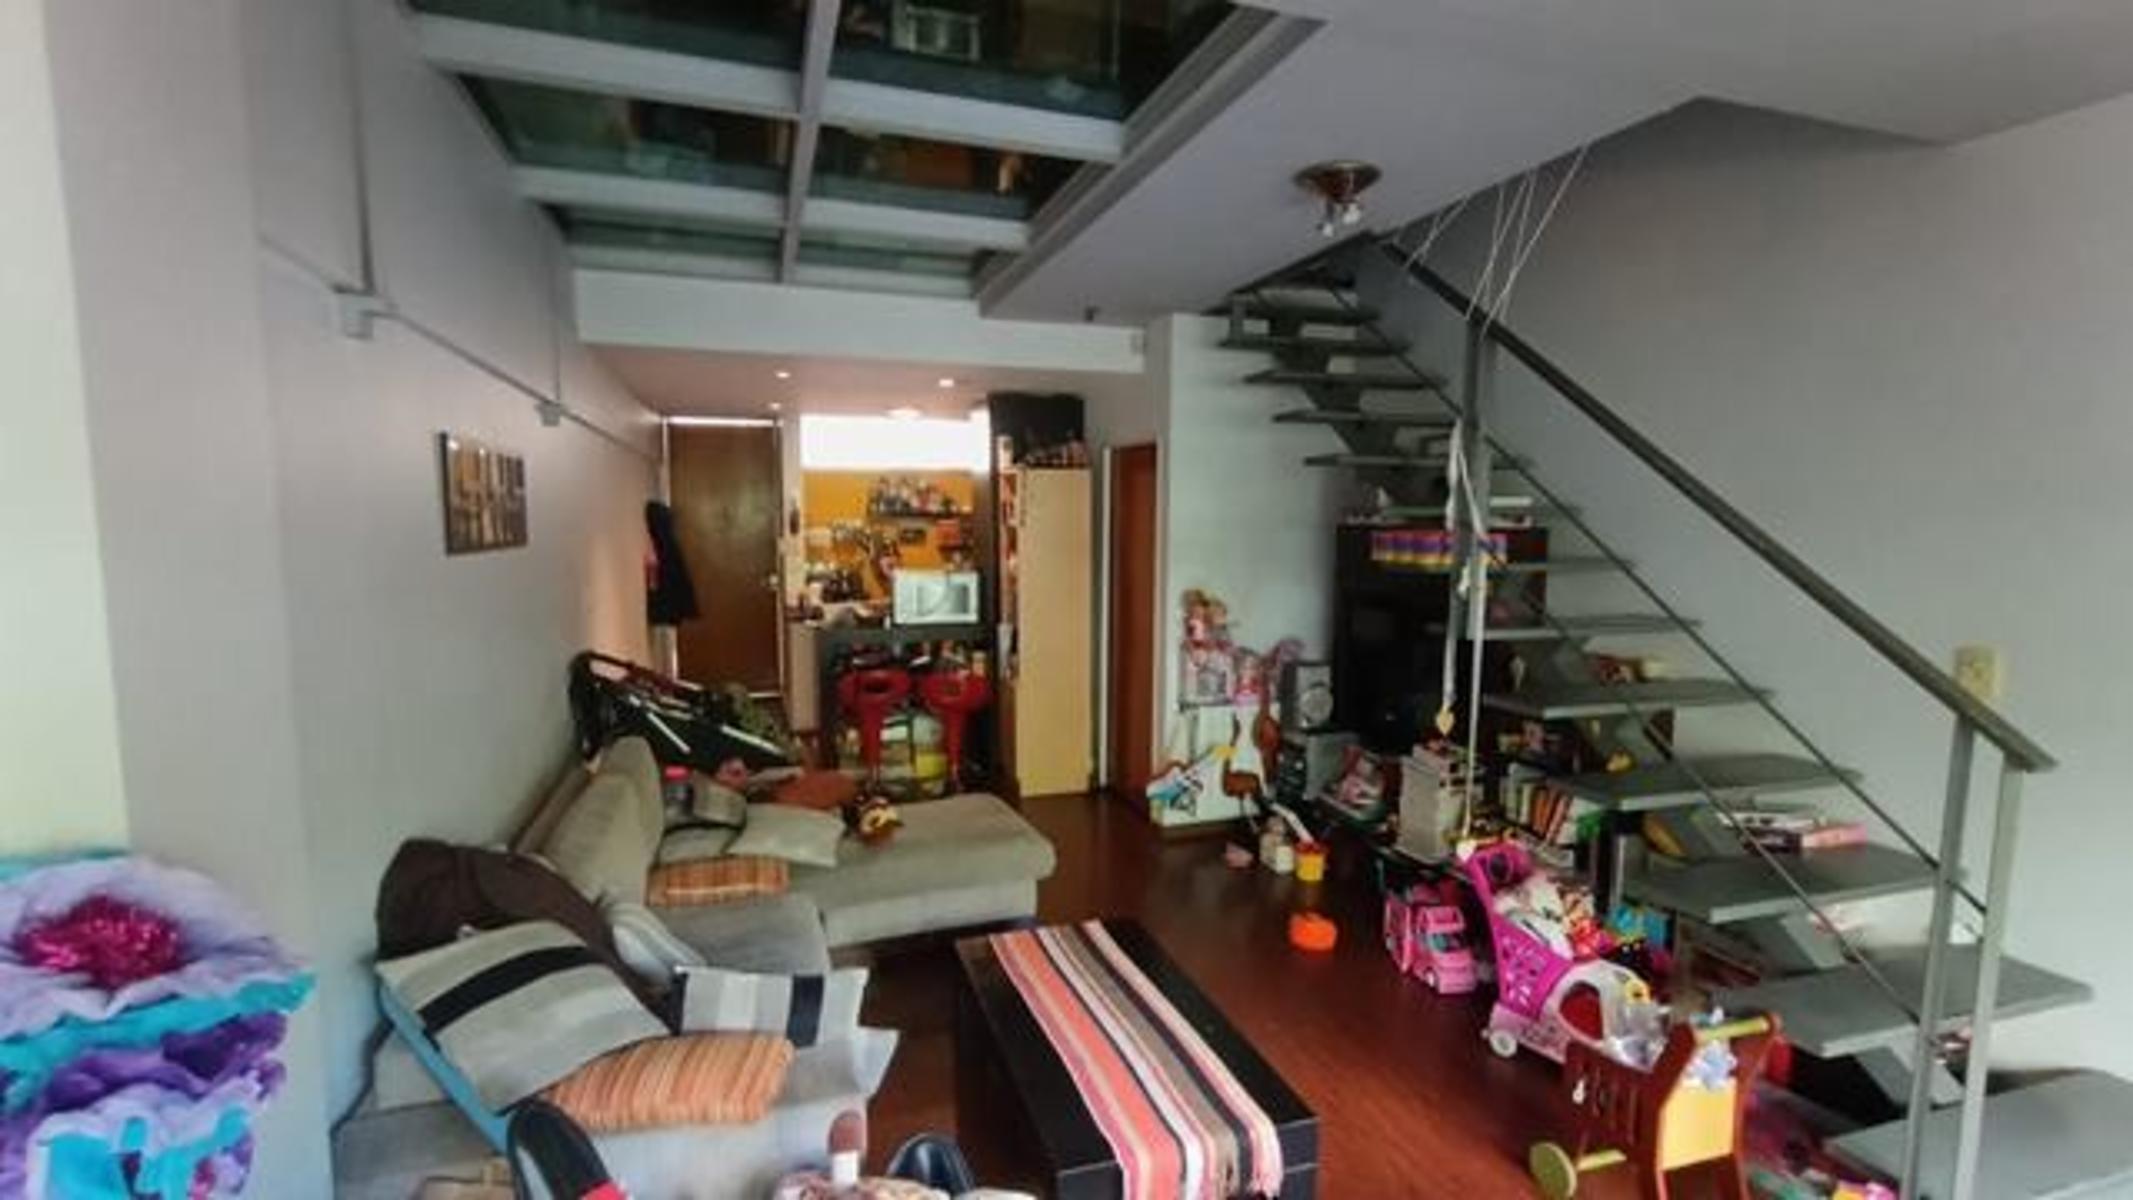 VILLA CRESPO-  Moderno departamento en dúplex: ¡descubrí tu nuevo hogar